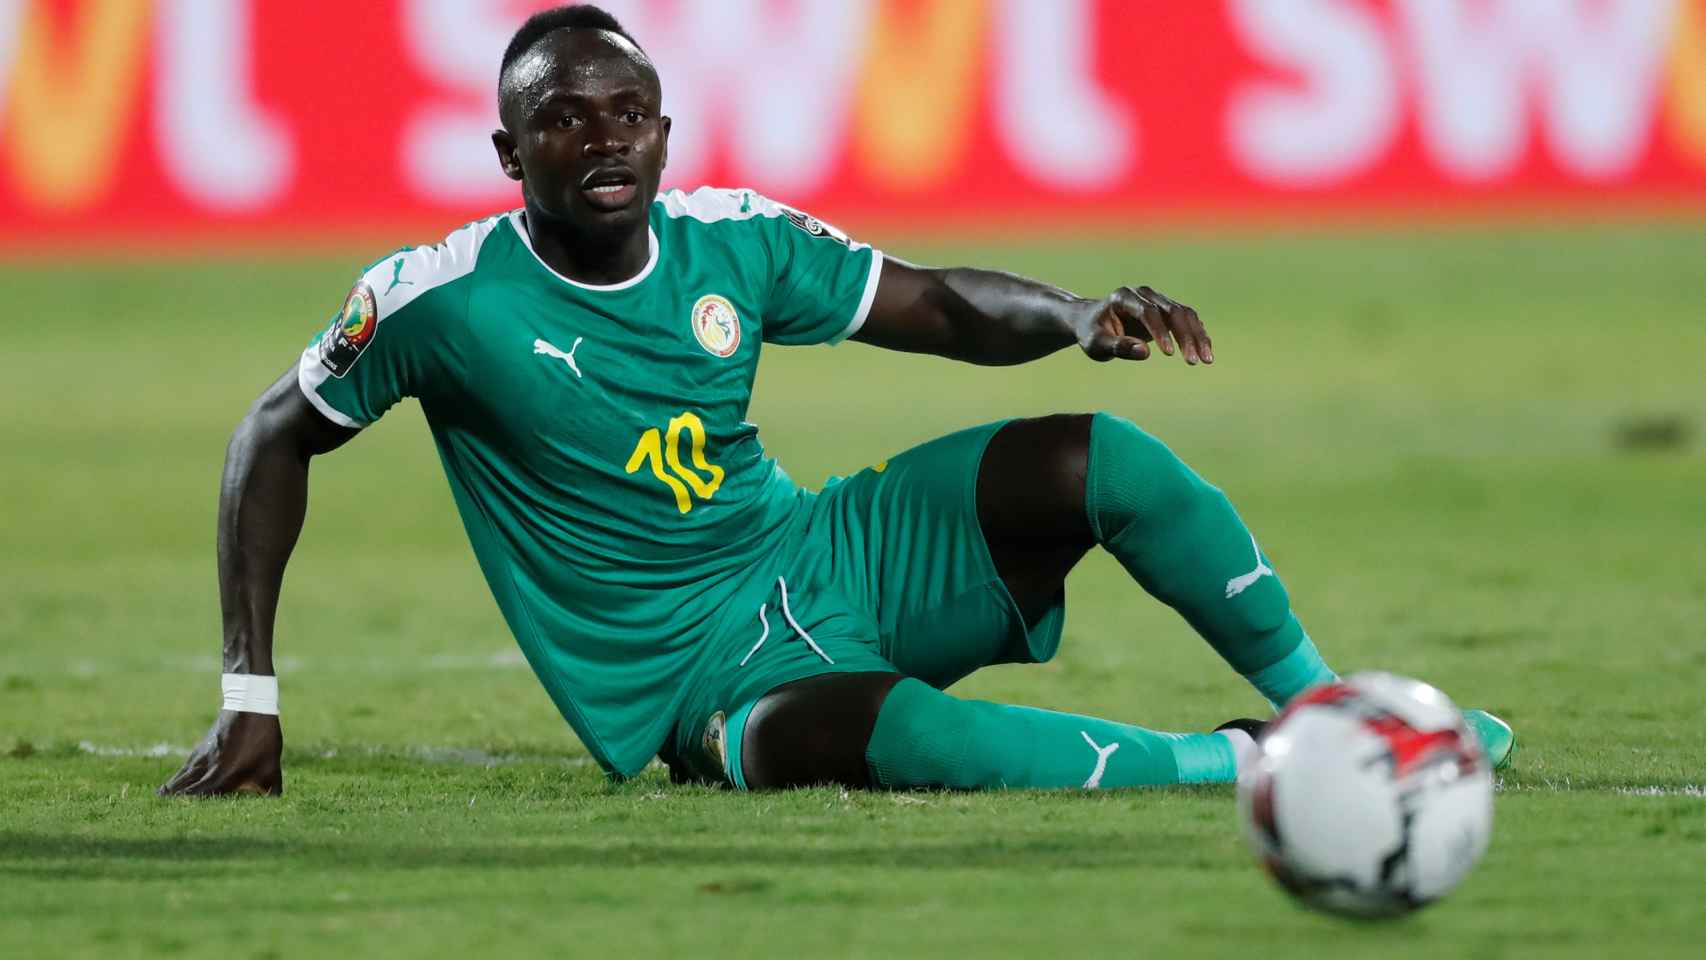 Sadio Mané, en la Copa África 2019 con la selección de Senegal